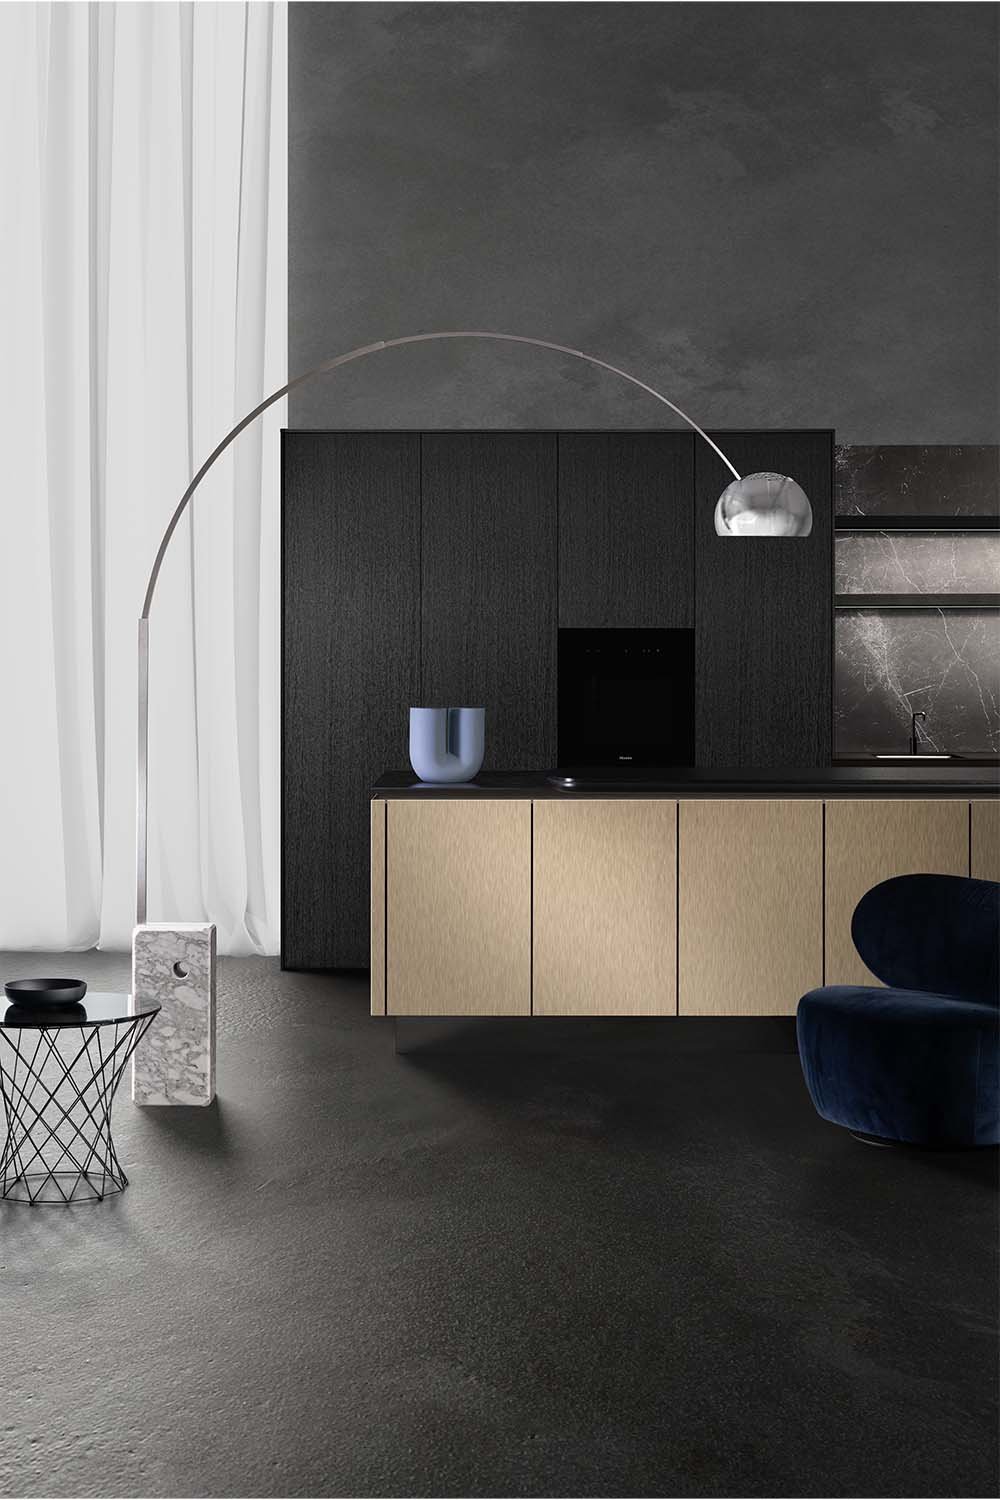 Schwarz ist das neue Weiß: Dunkler Minimalismus ist in der Küche gefragt, sowohl bei den Möbeln selbst als auch an den Wänden.